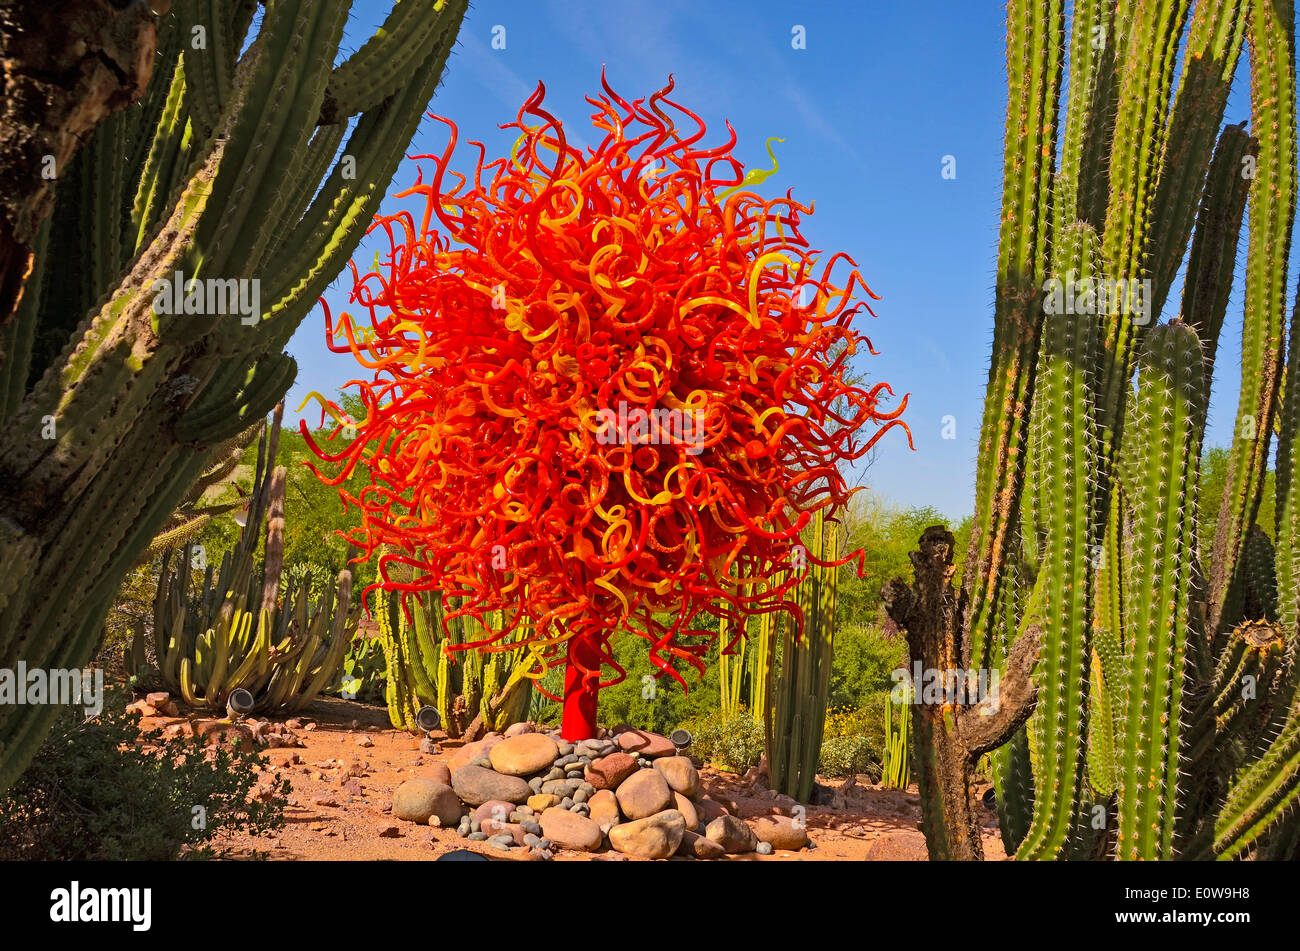 Le légendaire artiste verrier Dale Chihuly expose son travail au Desert Botanical Gardens à Phoenix, Arizona, USA au cours de 2014. Banque D'Images